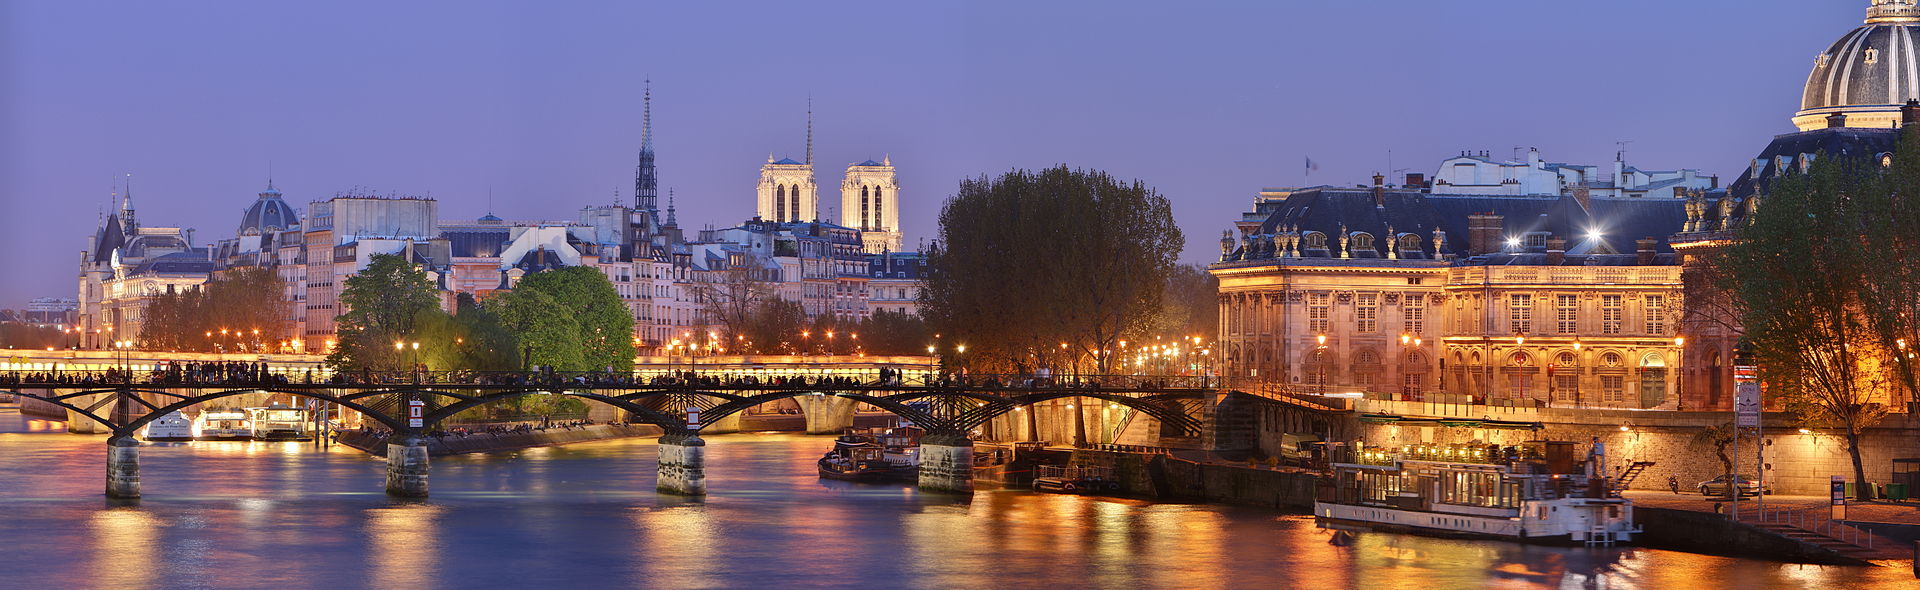 Pont_des_Arts,_Paris